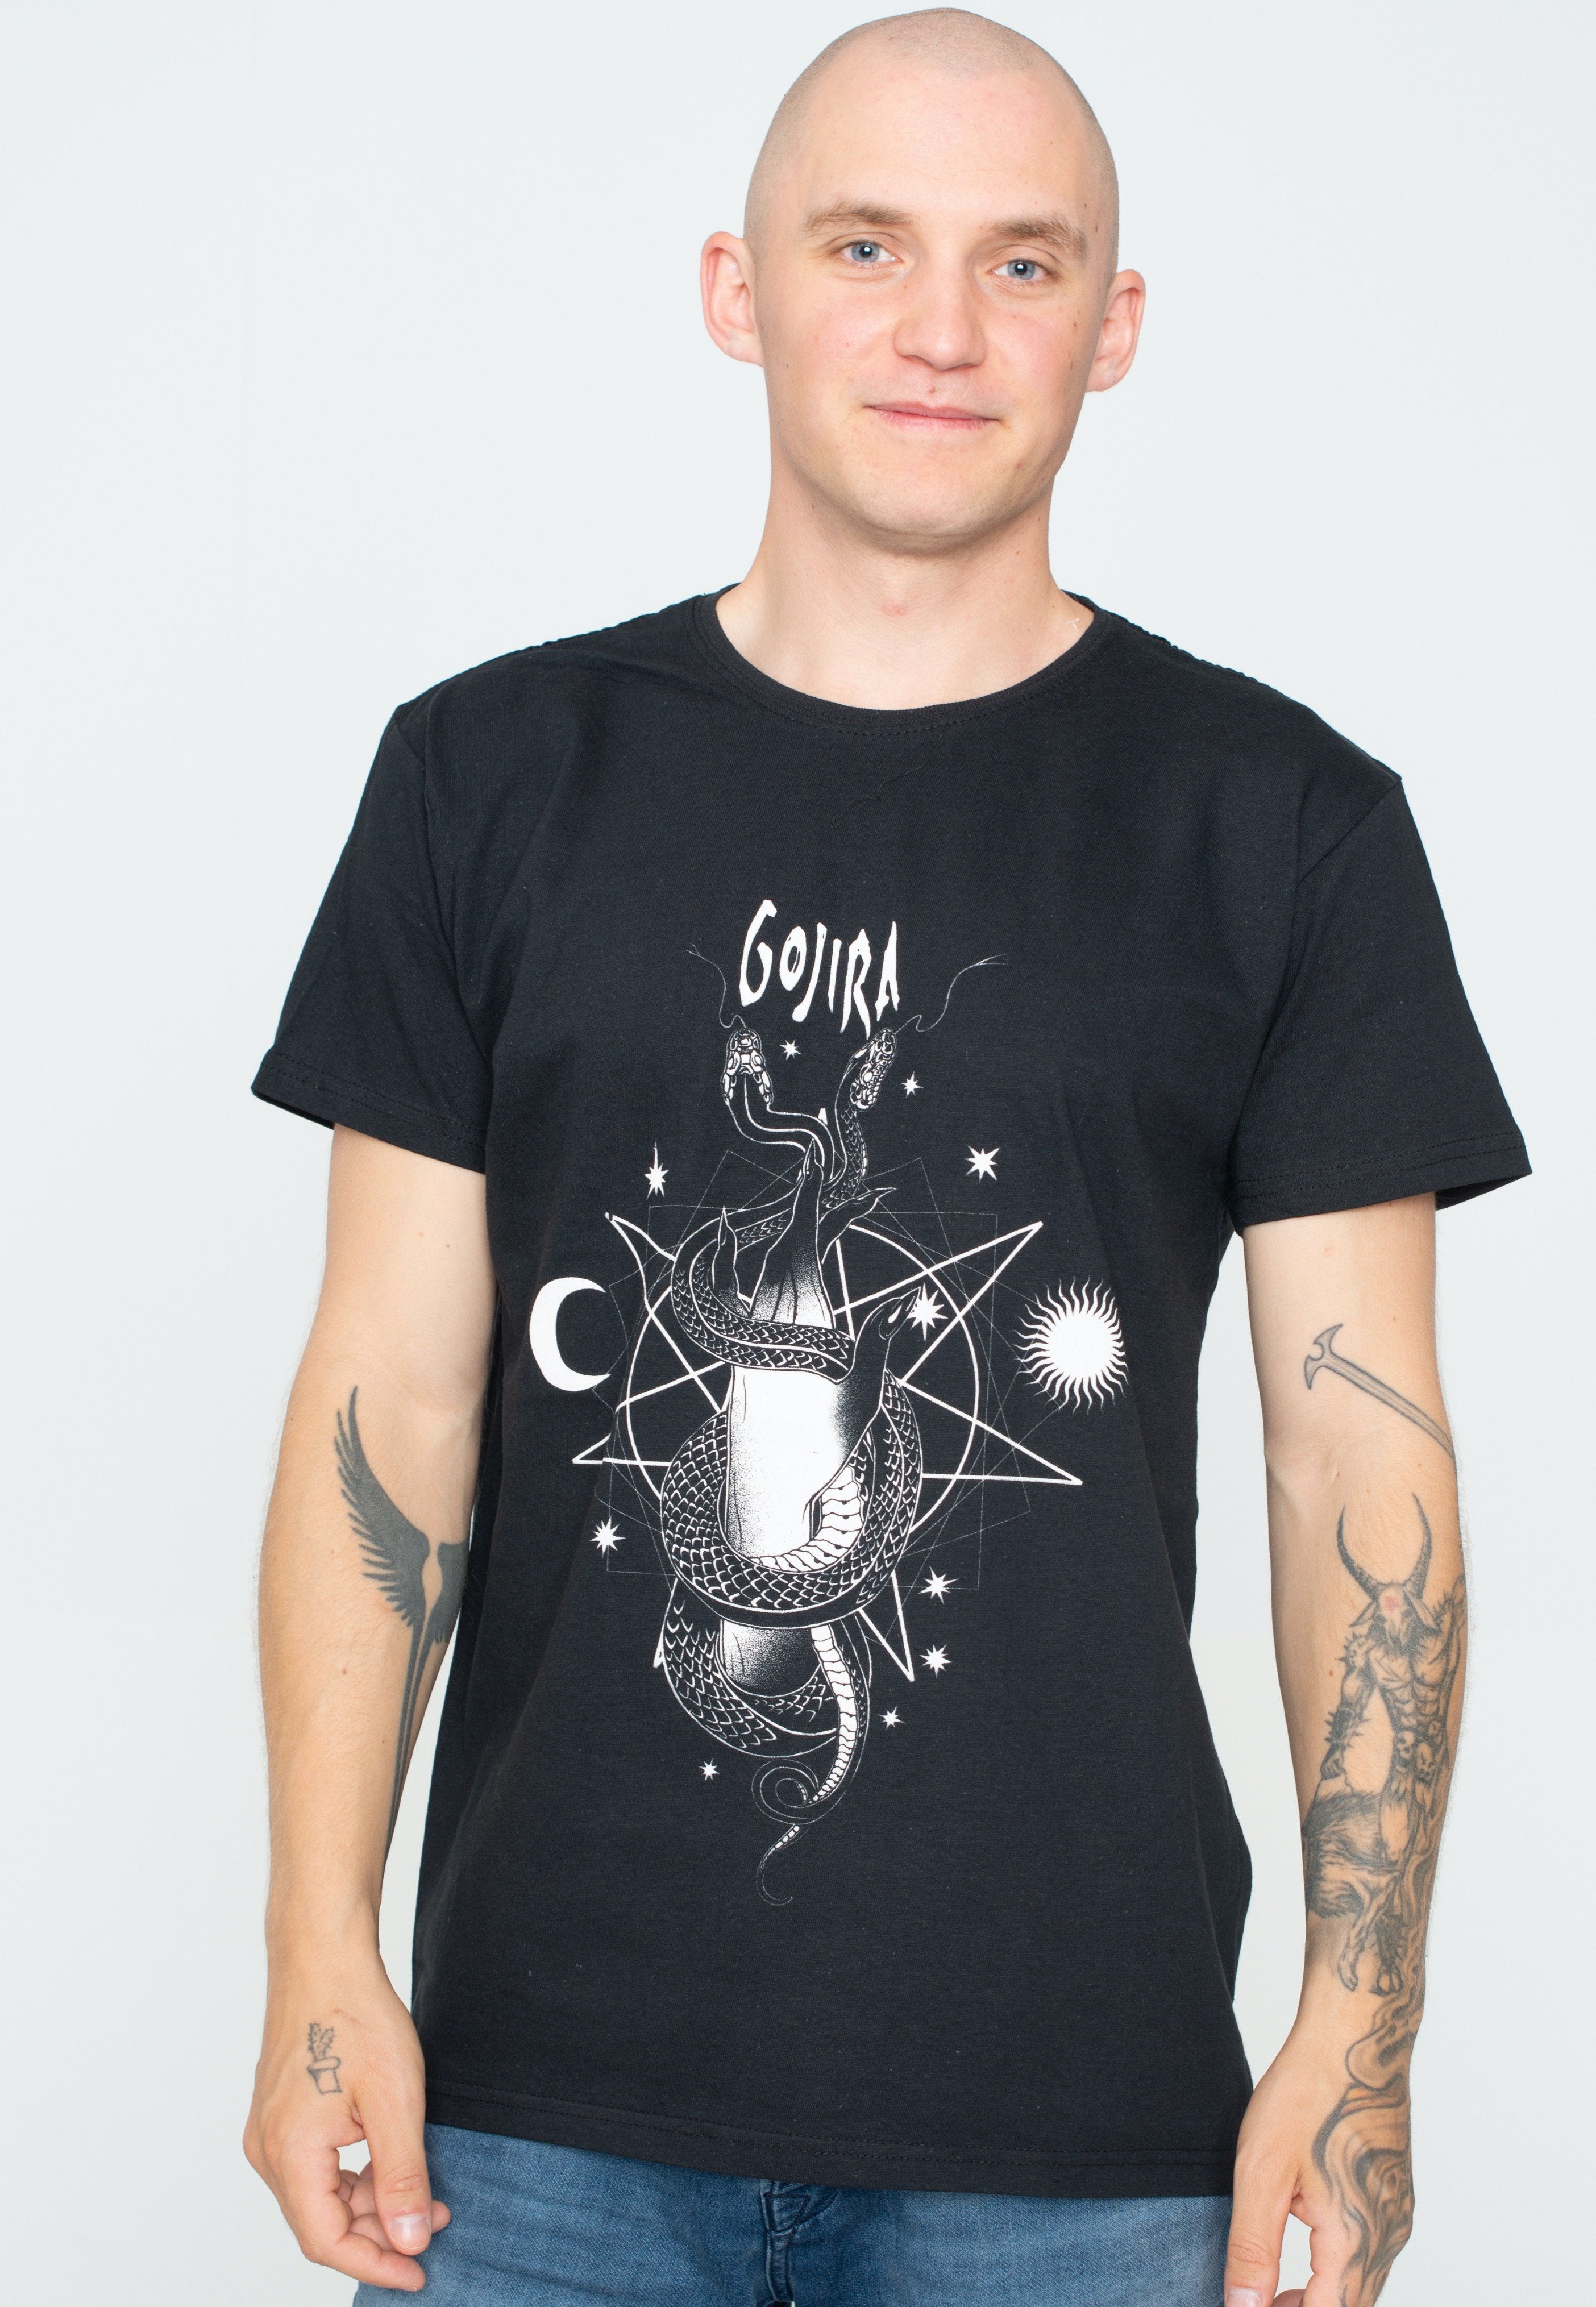 Gojira - Celestial Snakes - T-Shirt